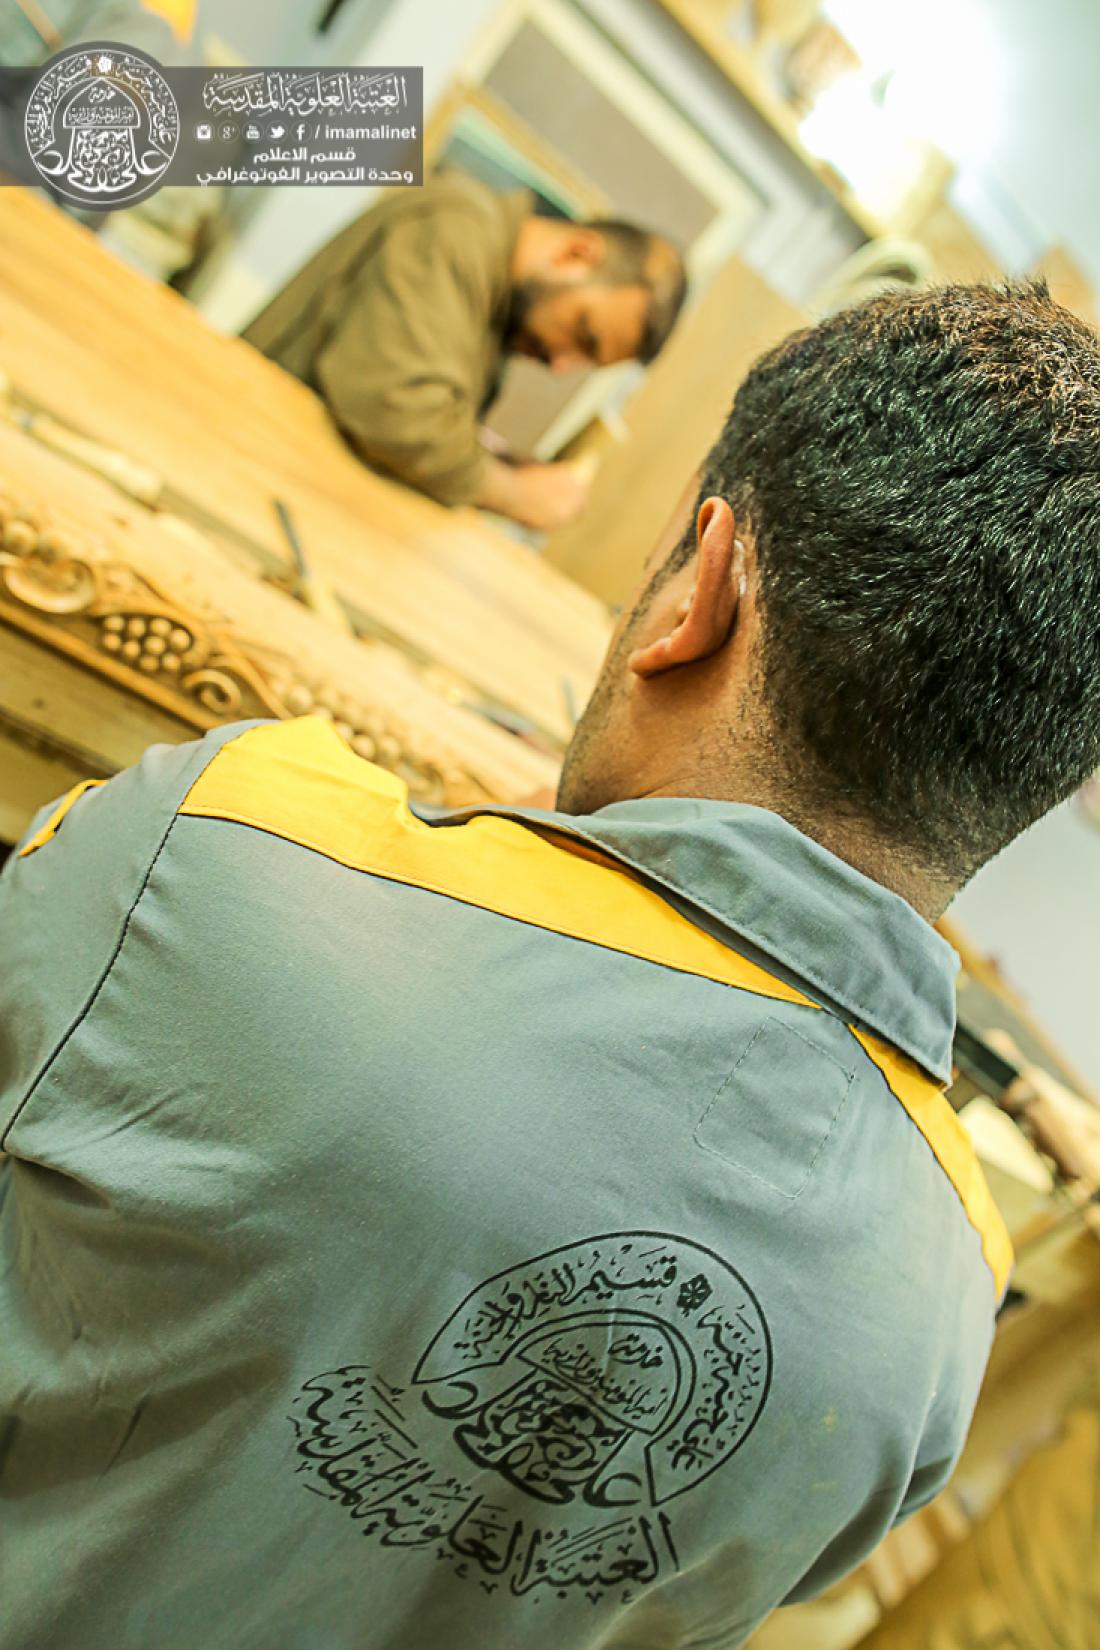 تقرير مصور : اعمال وحدة النقش على الخشب التابعة الى قسم الصيانة في العتبة العلوية المقدسة  | 